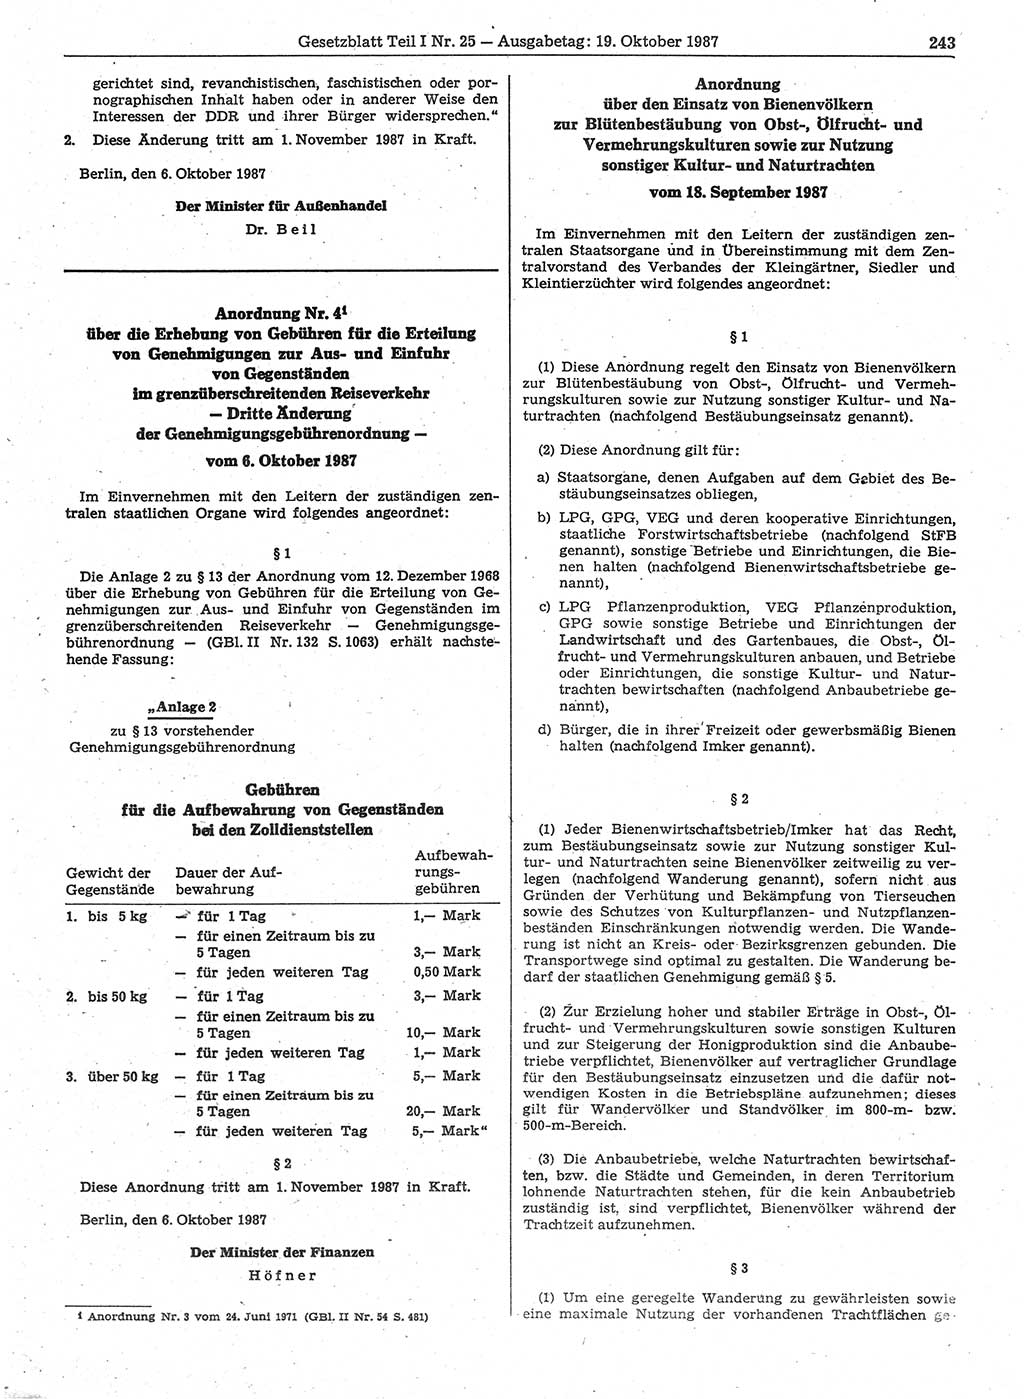 Gesetzblatt (GBl.) der Deutschen Demokratischen Republik (DDR) Teil Ⅰ 1987, Seite 243 (GBl. DDR Ⅰ 1987, S. 243)